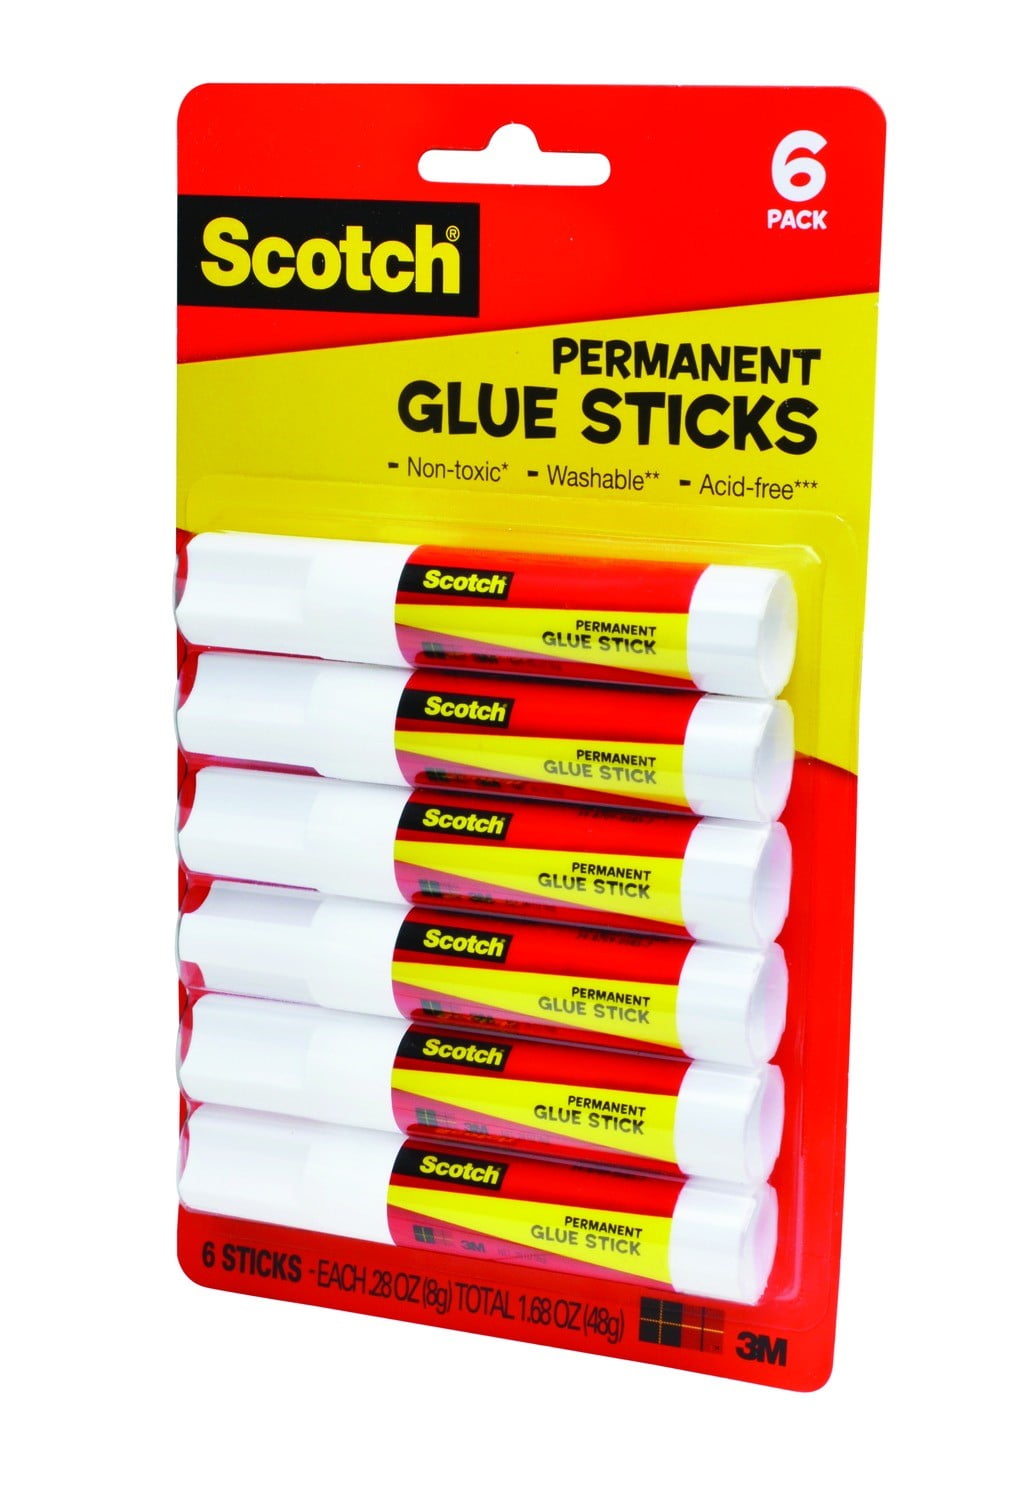 3M Scotch Glue Stick Permanent, Health & Personal Care